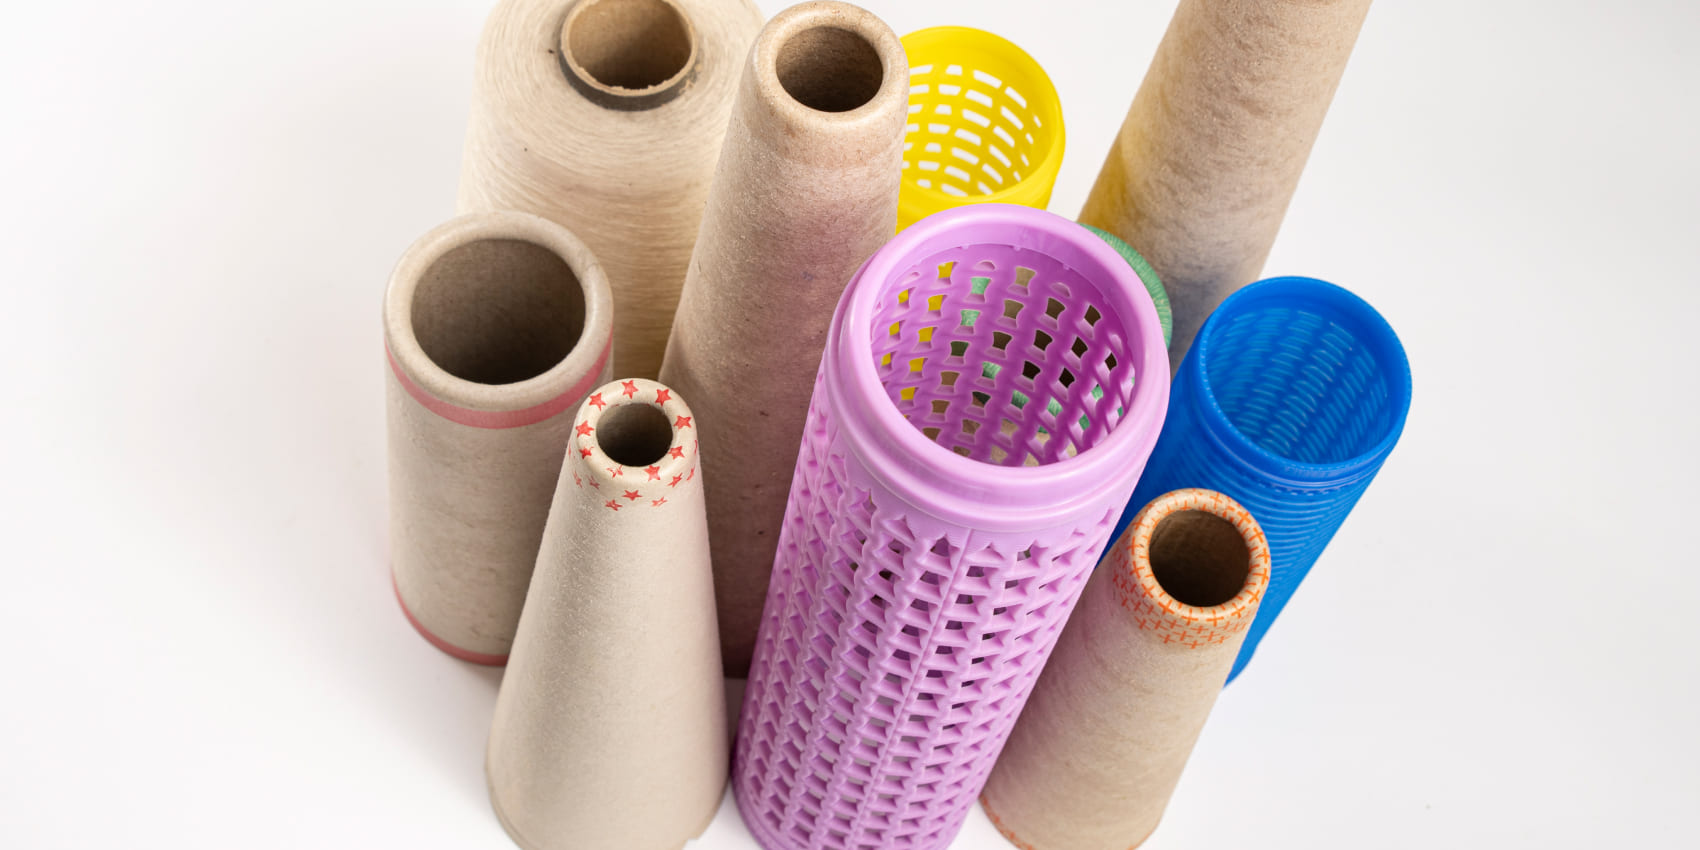 Tubes en plastique pour l'industrie textile